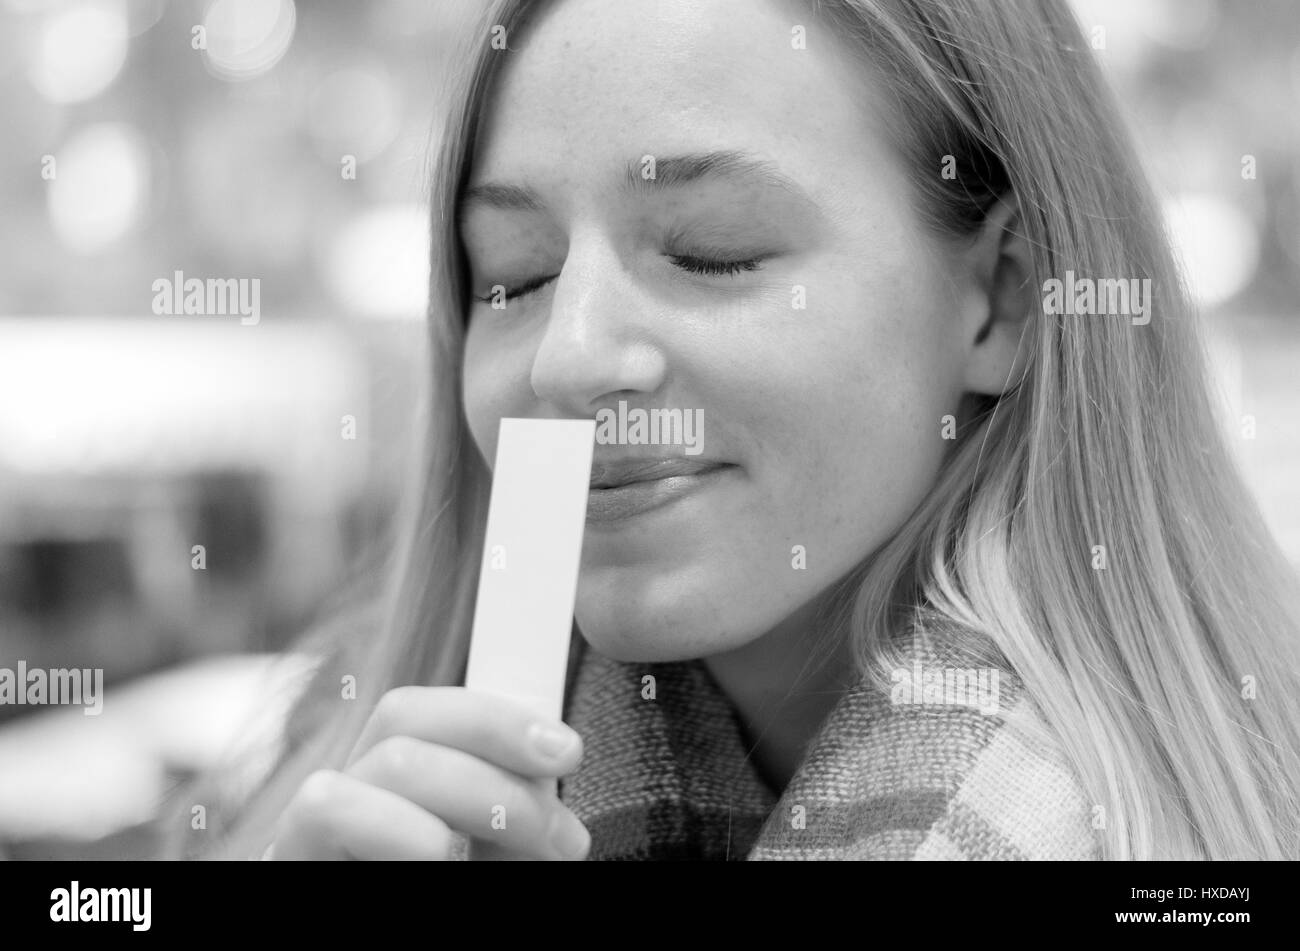 Junge, blonde Frau genoss ein Aroma mit einem schönen Lächeln der Glückseligkeit und Augen vor Lust geschlossen, da sie an eine weiße Karte in der Hand schnuppert Stockfoto